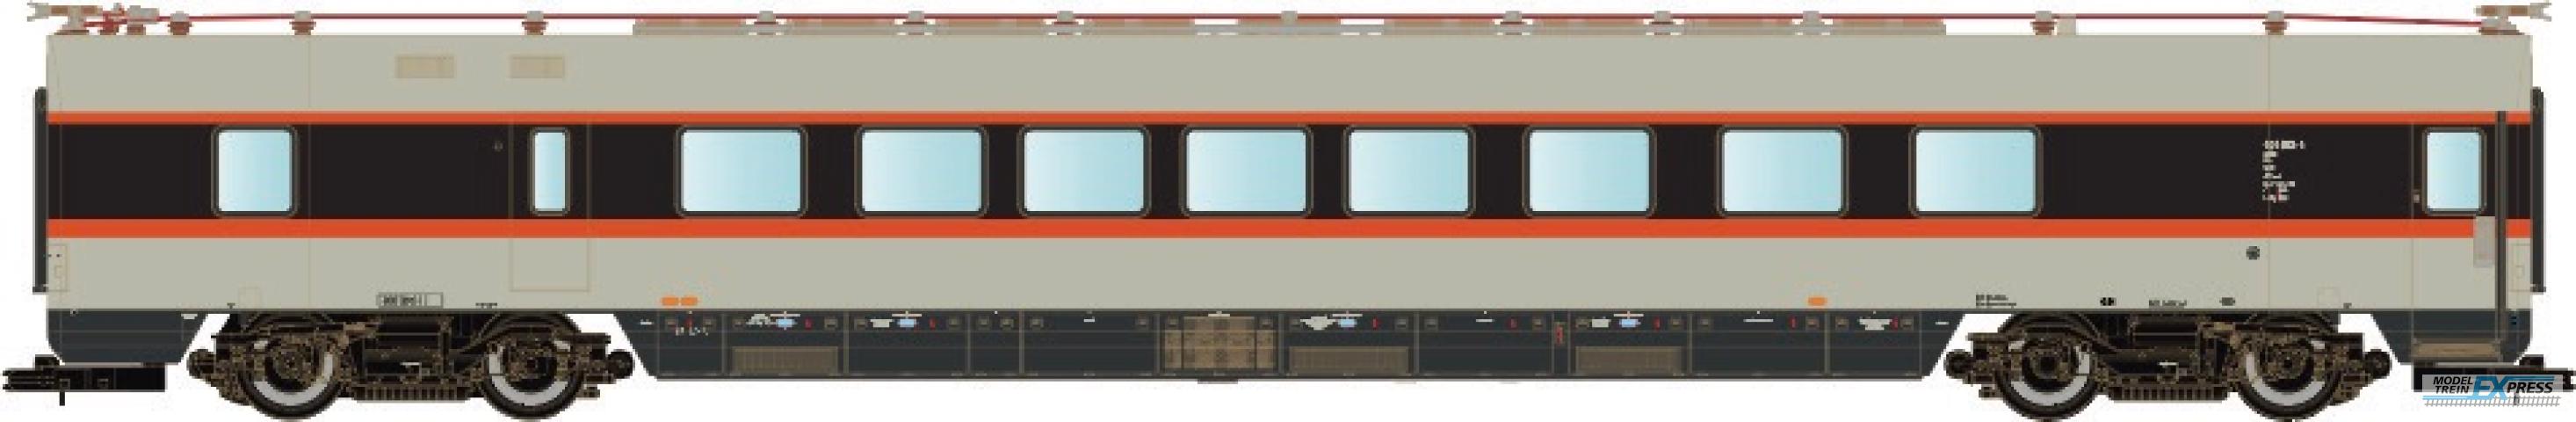 LS Models 16003 DB ET 403, restauratie-rijtuig, grijs/rood/zwart, IC, versterkingswagen  /  Ep. IVa  /  DB  /  HO  /  DC  /  1 P.